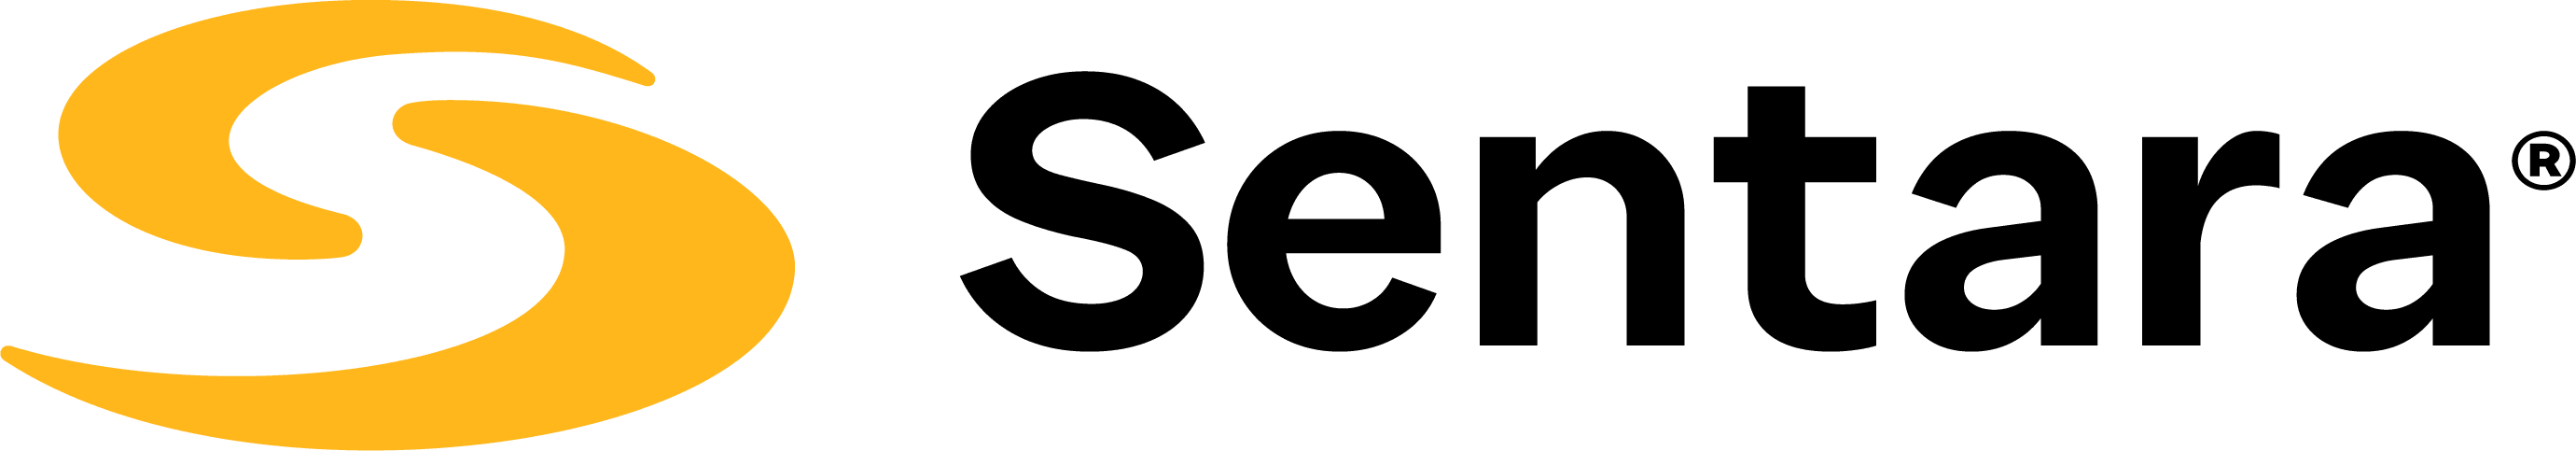 Sentara Health logo - Become A Sponsor